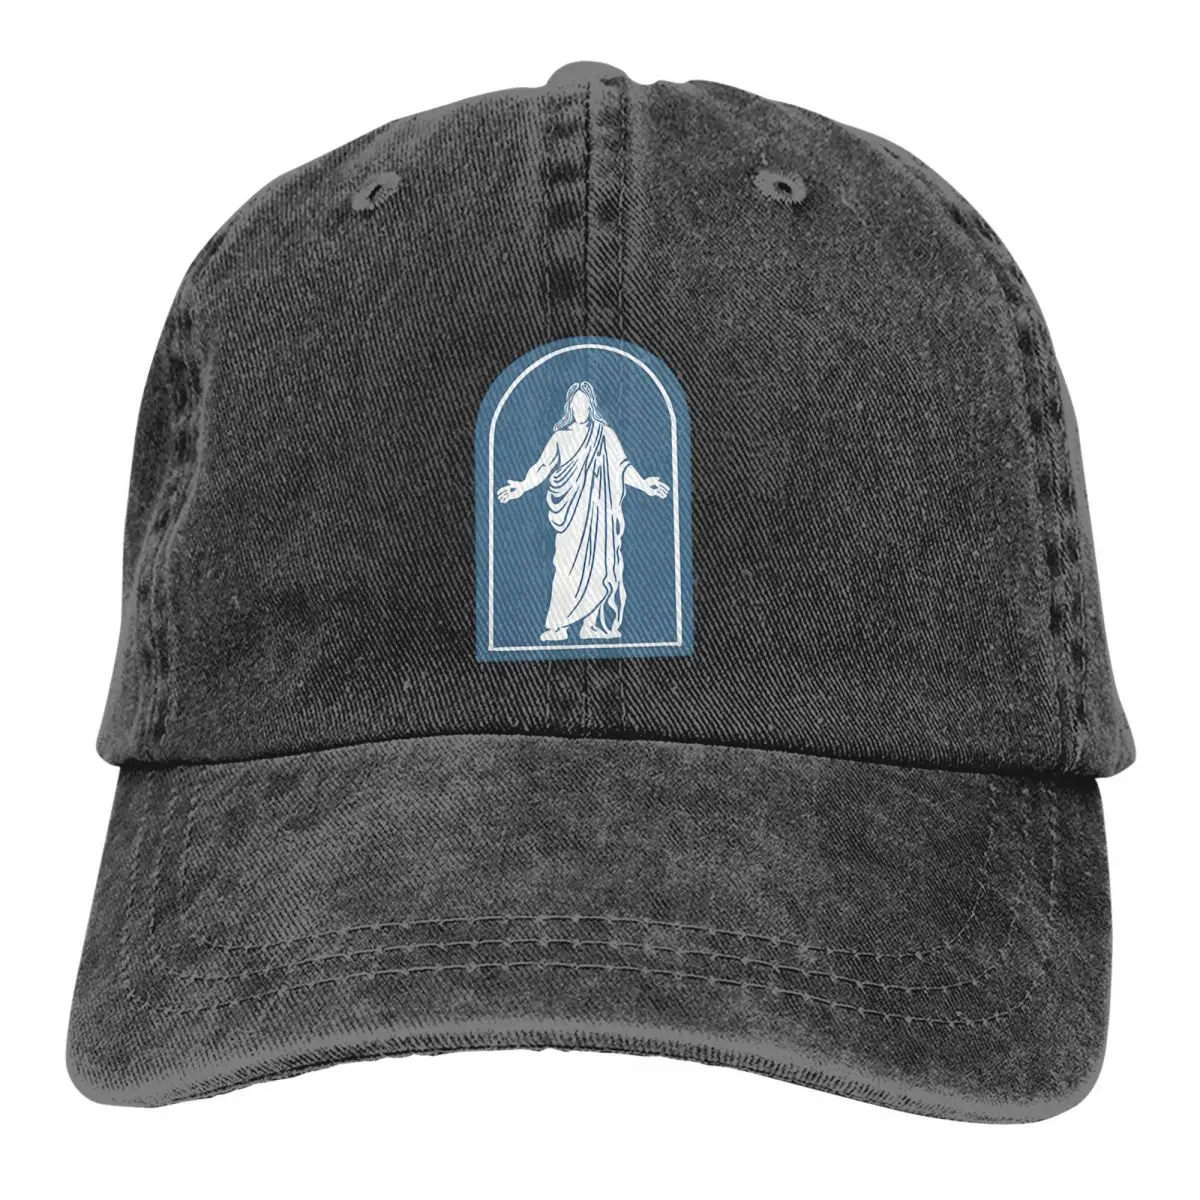 

The Church Of Jesus Christ Of Latter Day Saints Baseball Caps Peaked Cap Jesus God Cross Sun Shade Hats for Men Women